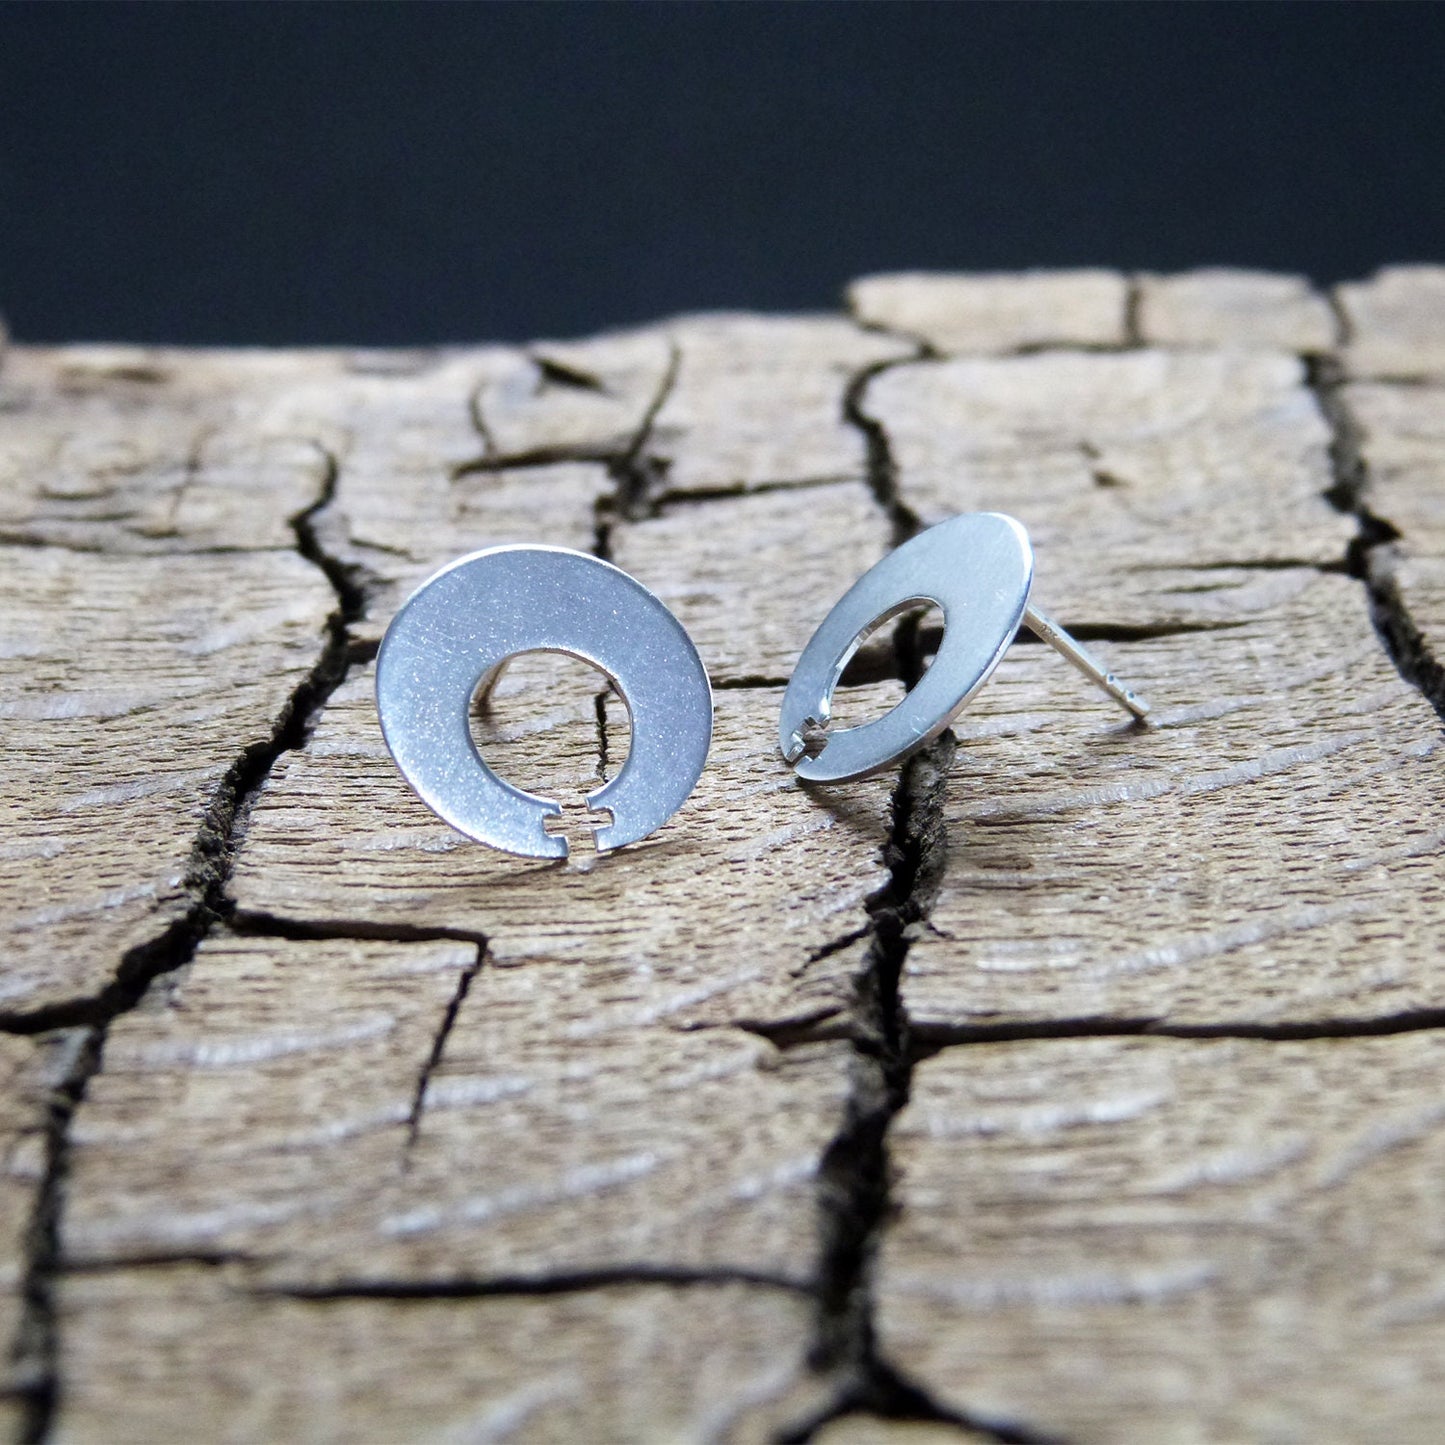 Women Power 01 earrings in 925 silver